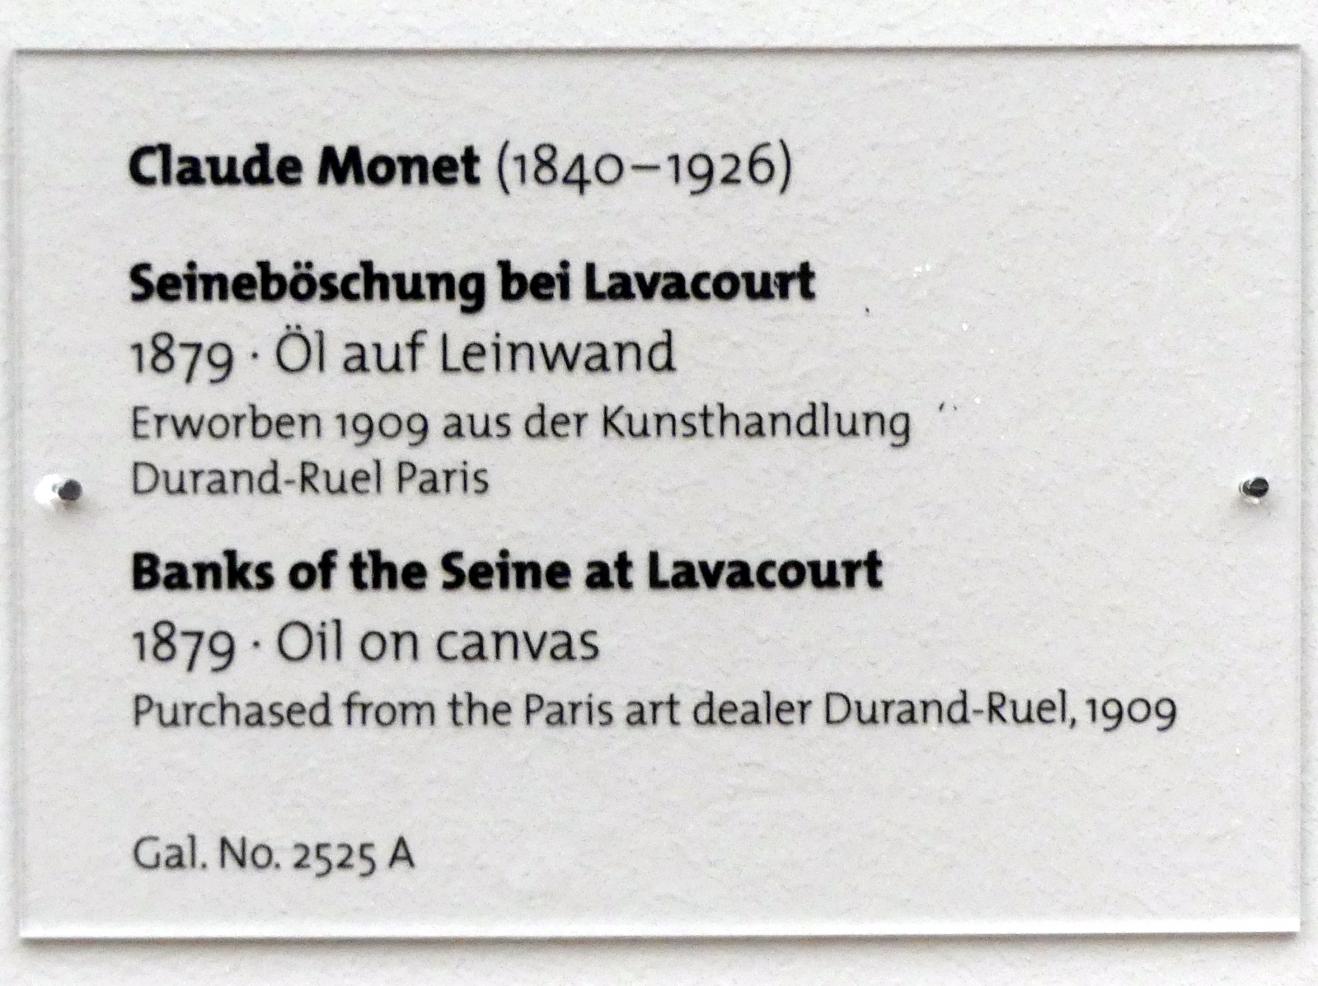 Claude Monet (1864–1925), Seineböschung bei Lavacourt, Dresden, Albertinum, Galerie Neue Meister, 2. Obergeschoss, Saal 11, 1879, Bild 2/2